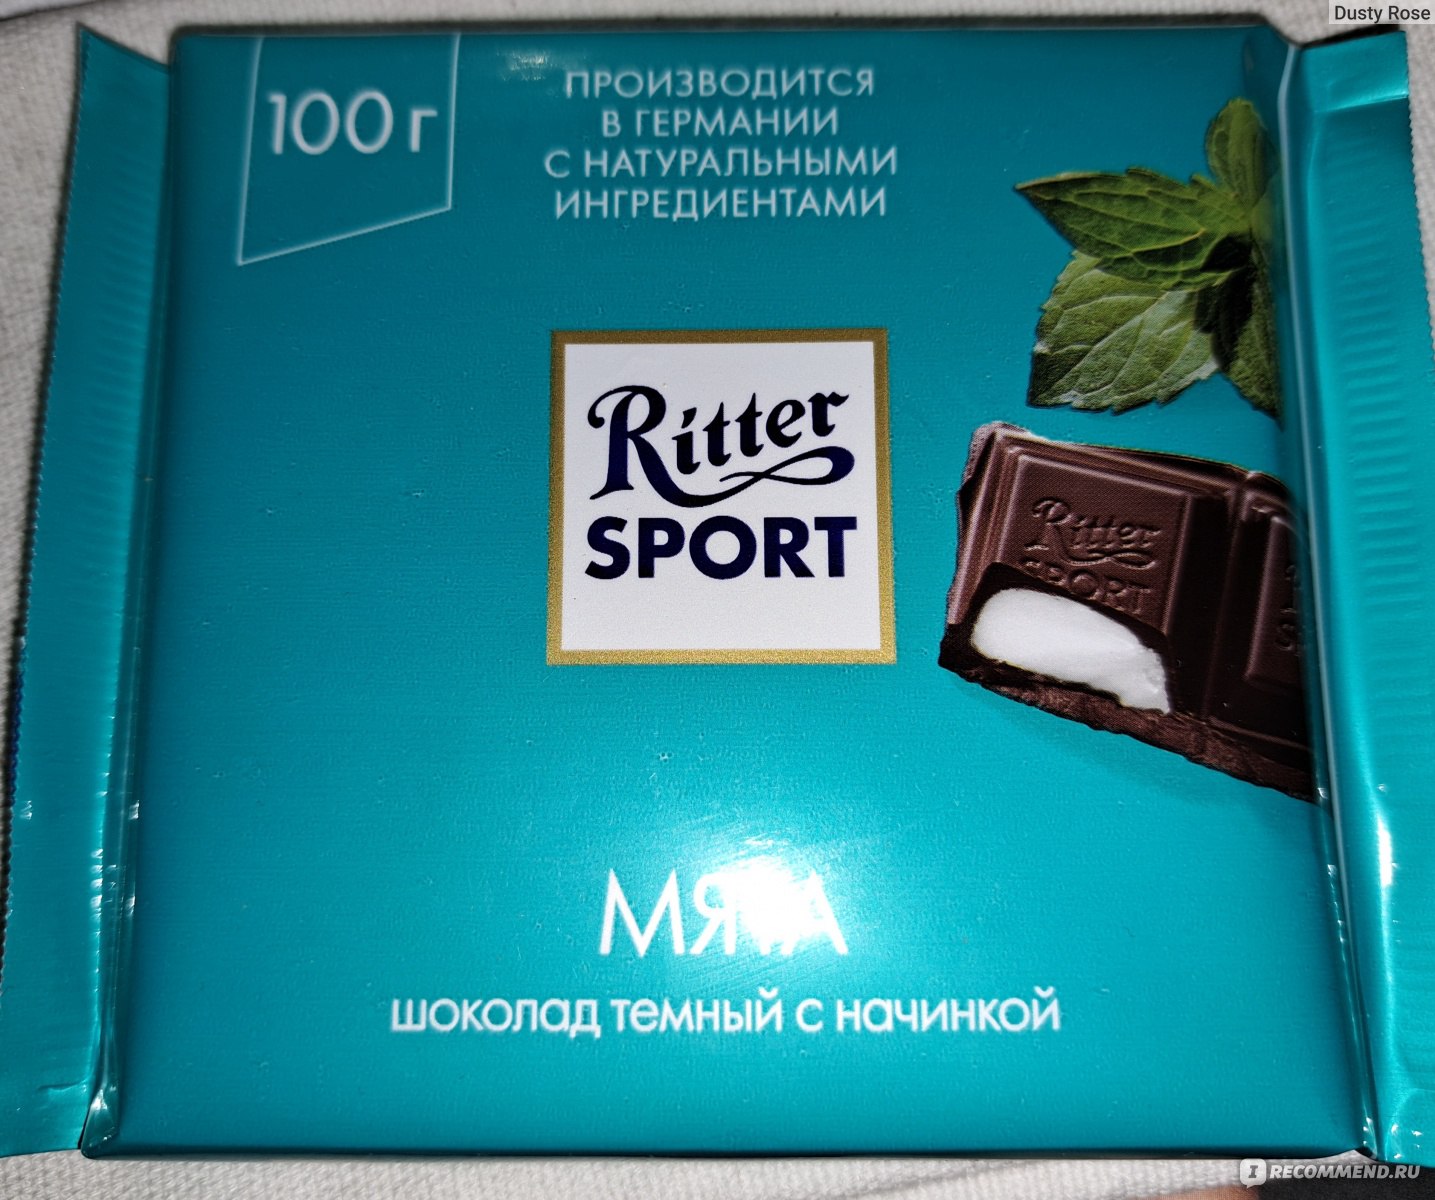 шоколад с мятой из финляндии